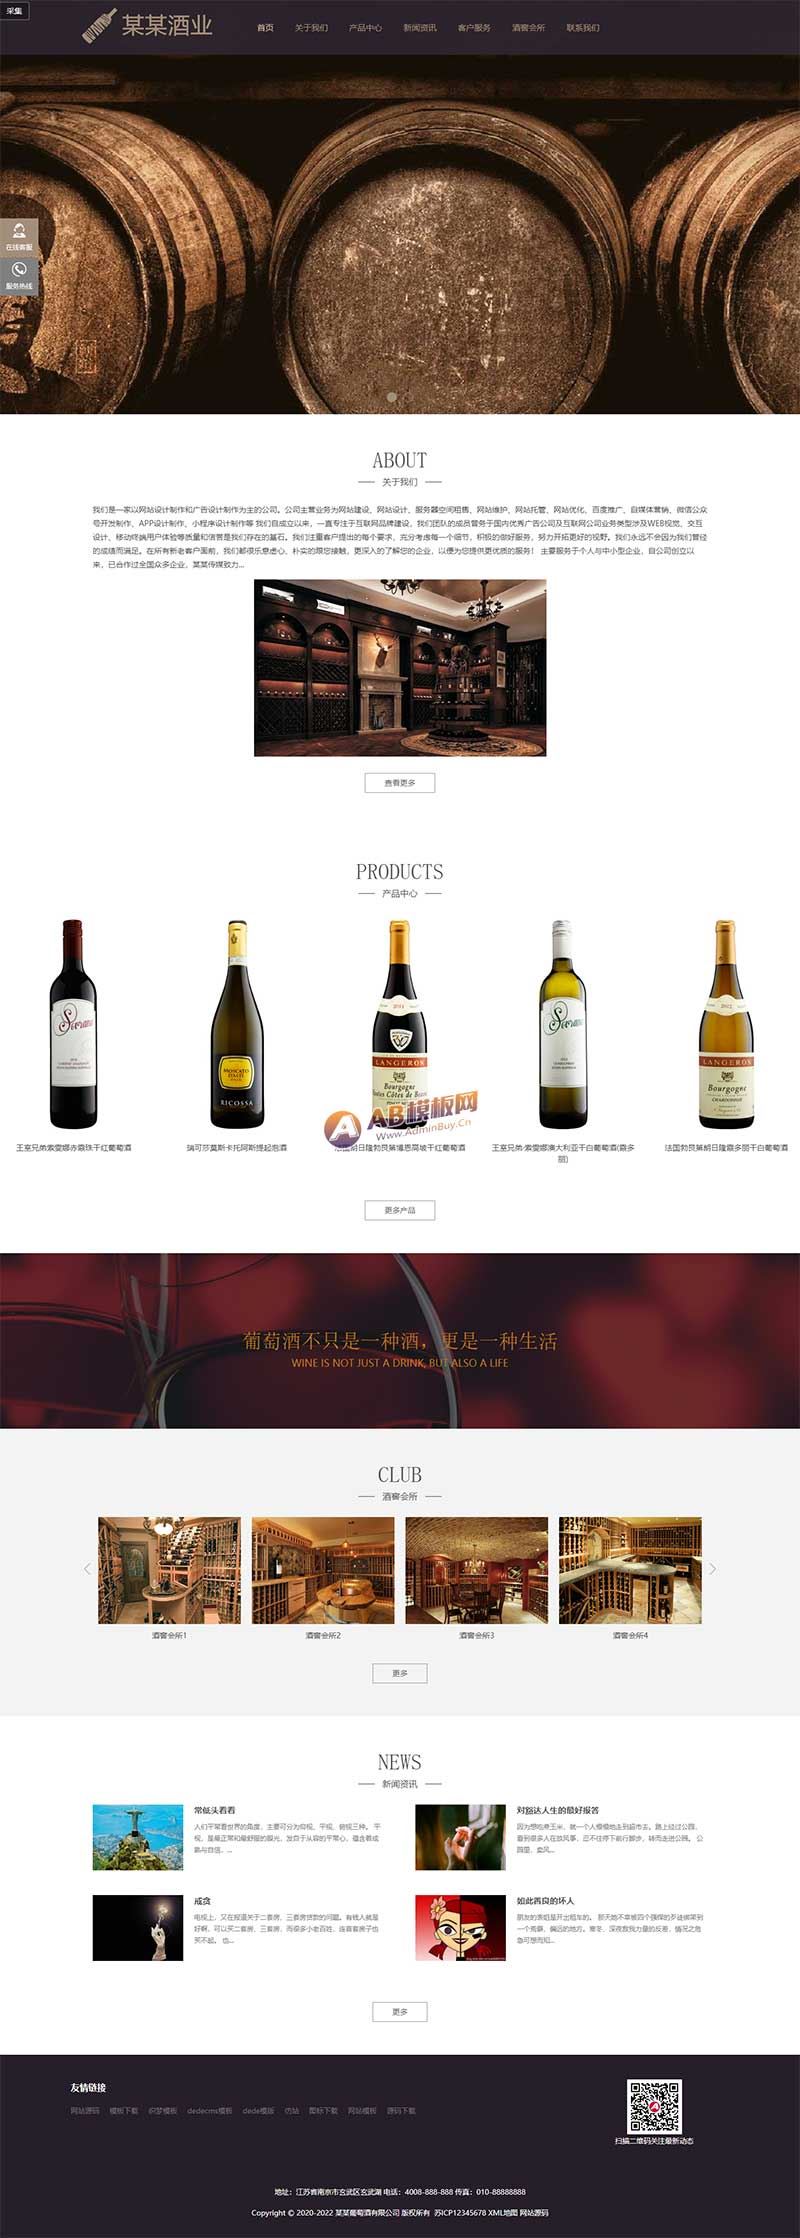 响应式高端藏酒酒业酒窖网站源码 HTML5葡萄酒酒业网站织梦模板(自适应手机版)